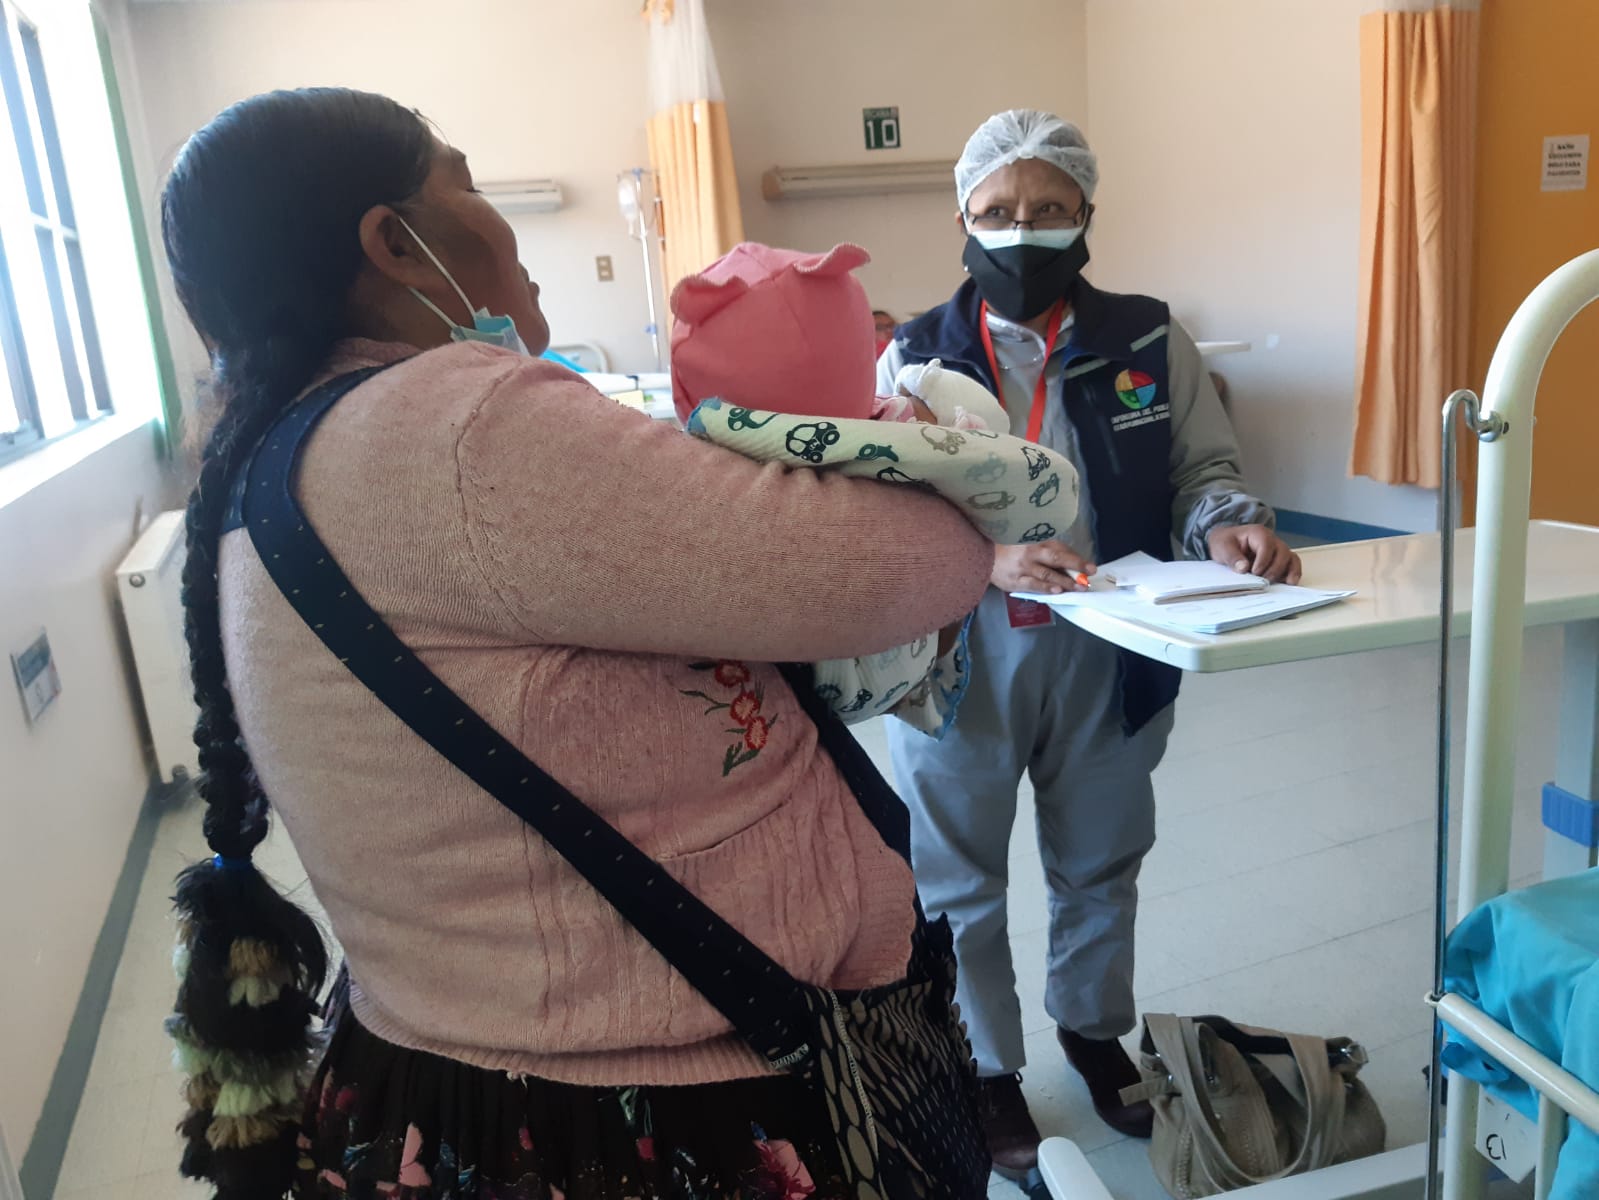 Delegación  Defensorial de La Paz efectúa seguimiento al caso de dos bebes de 5 meses maltratadas